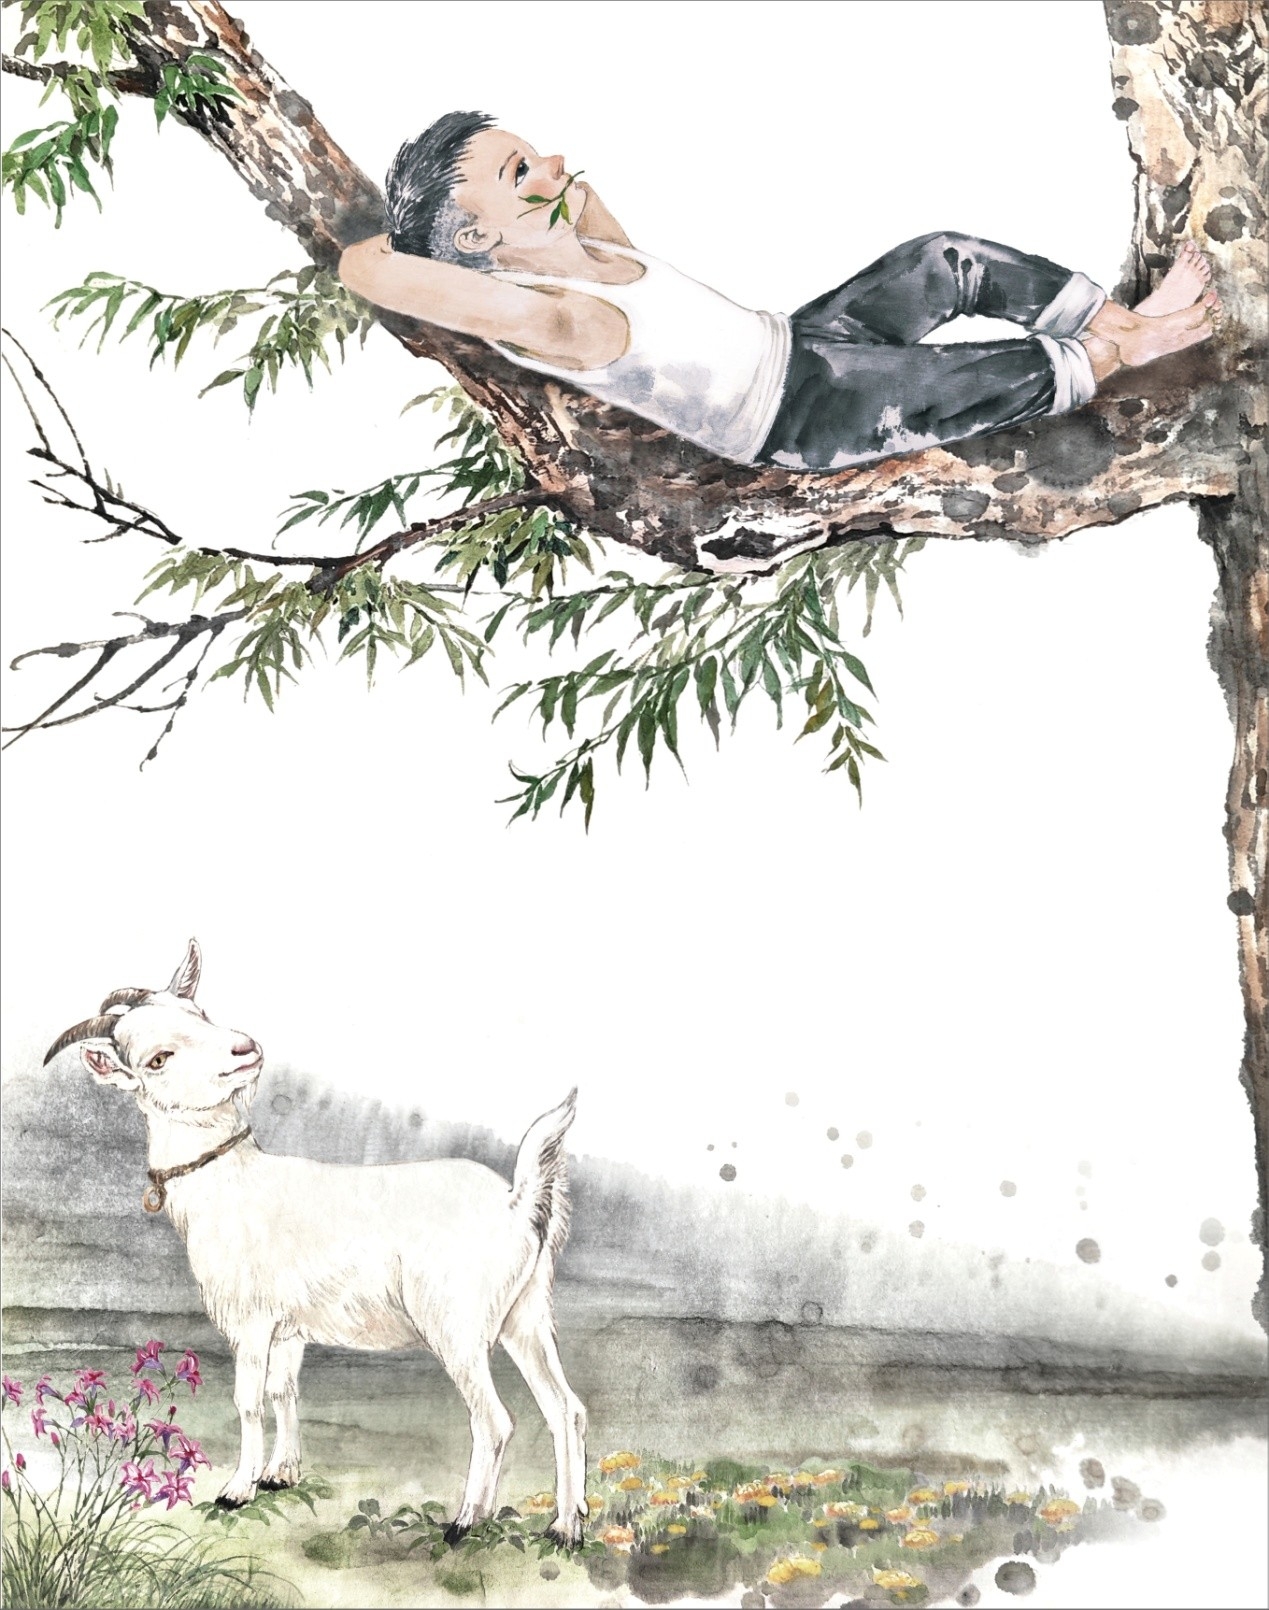 青年画家孙大勇应邀为金曾豪家园动物系列之《追风筝的狗》绘制插画